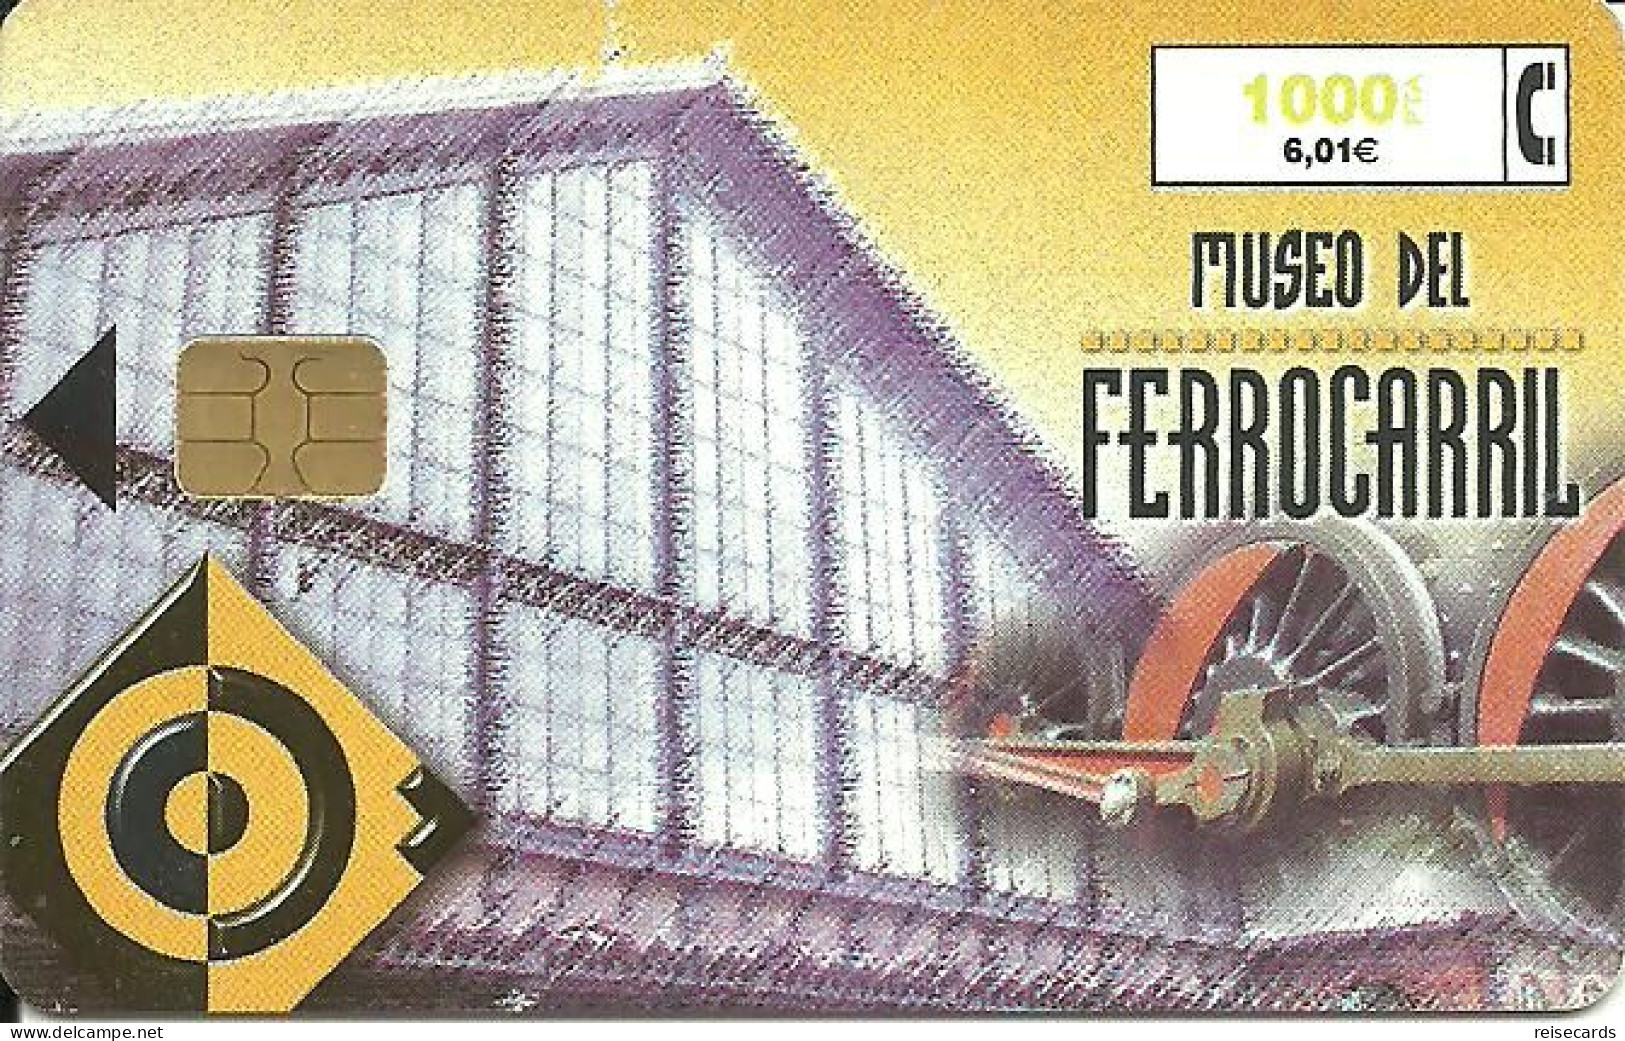 Spain: Telefonica - 1999 Museo Del Ferrocarril - Emisiones Privadas